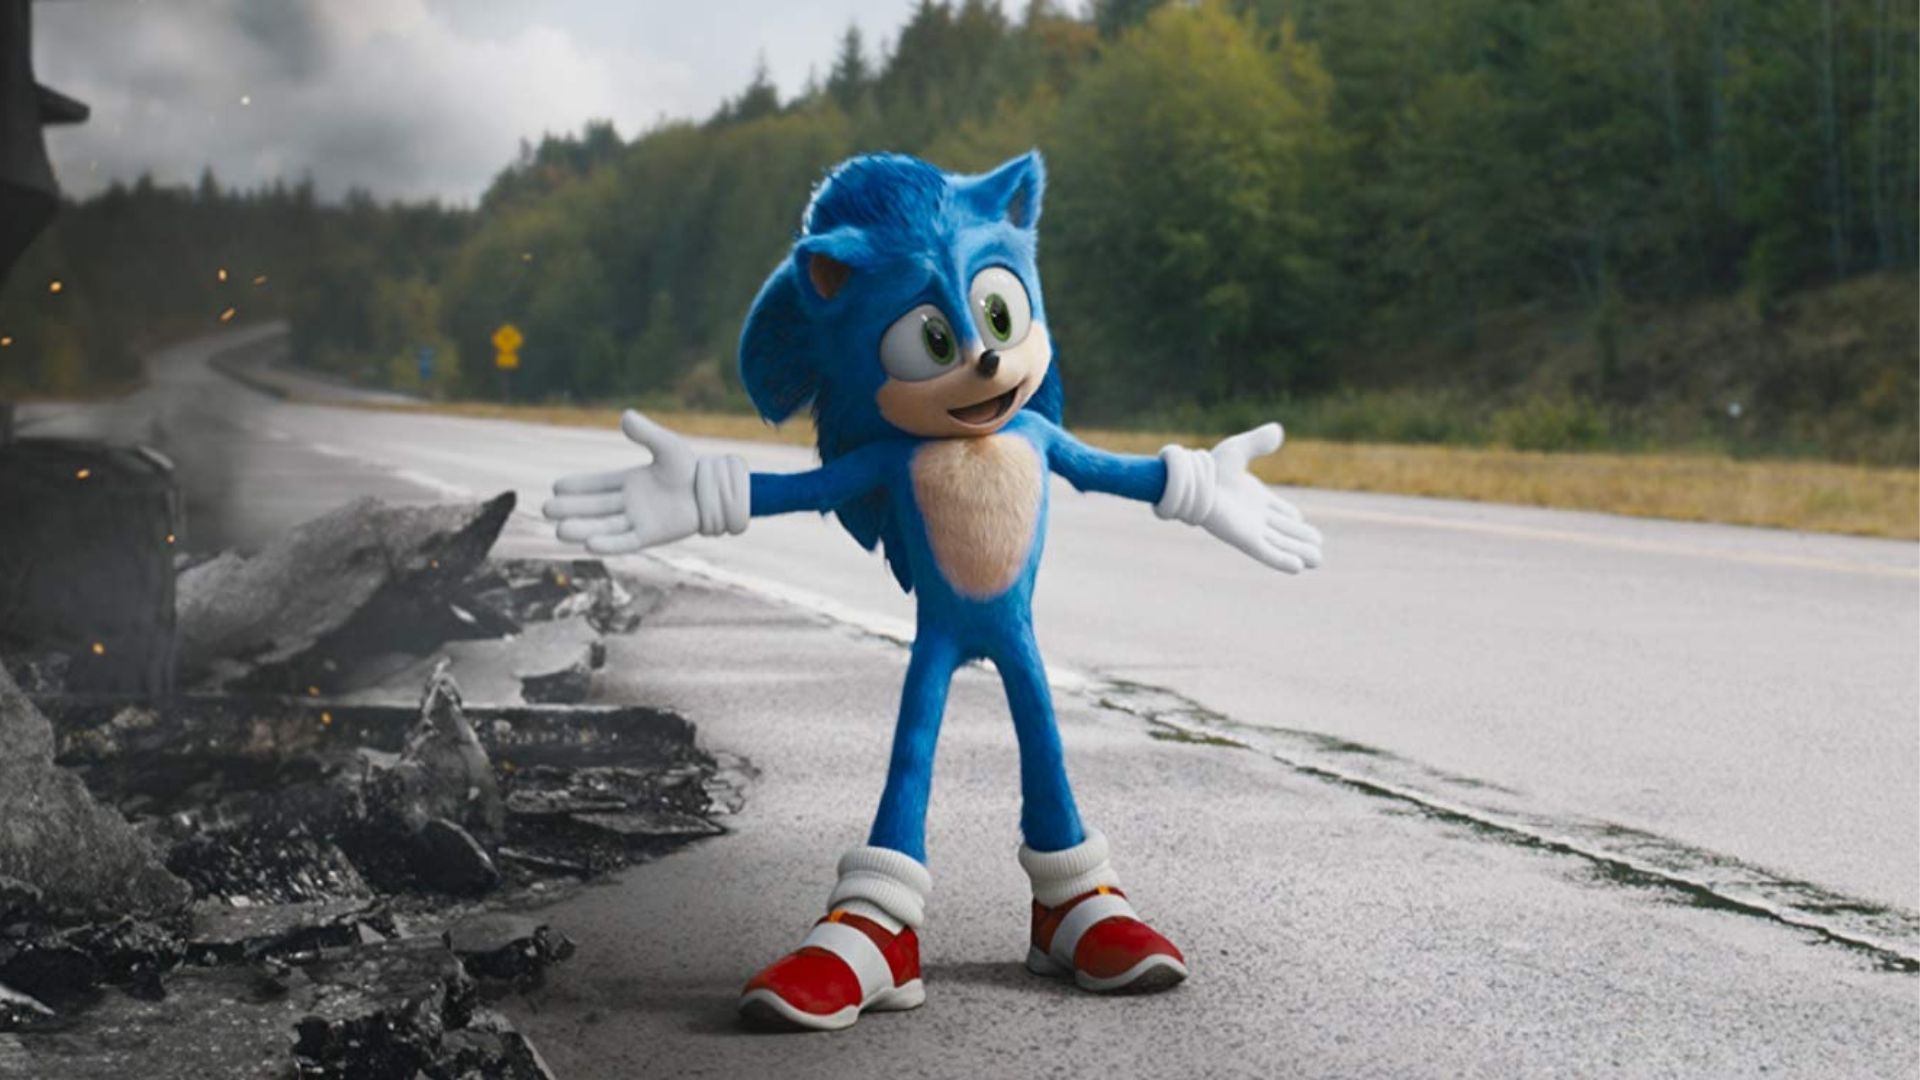 Sonic 3 é confirmado para dezembro de 2024 - Cinema10